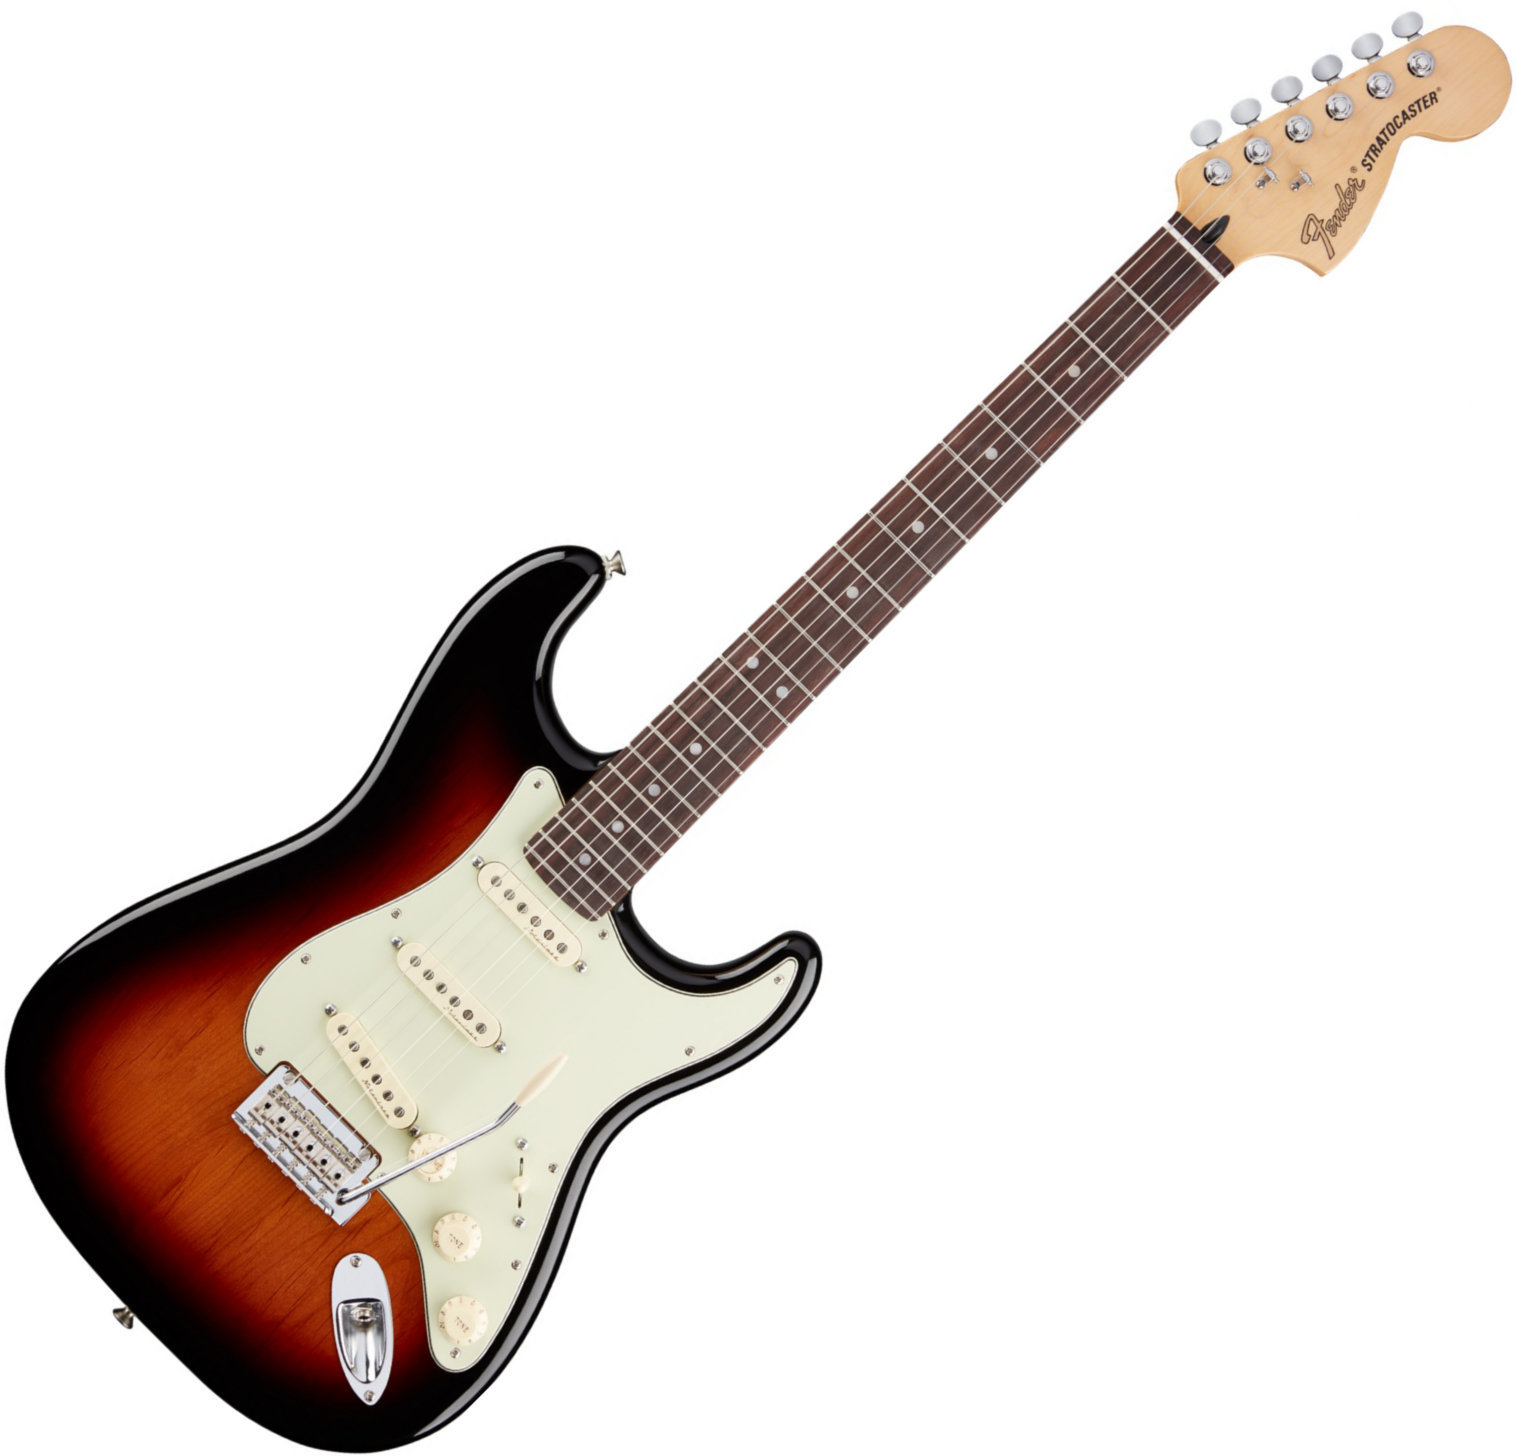 Sähkökitara Fender Deluxe Roadhouse Stratocaster, RW, 3 Tone Sunburst